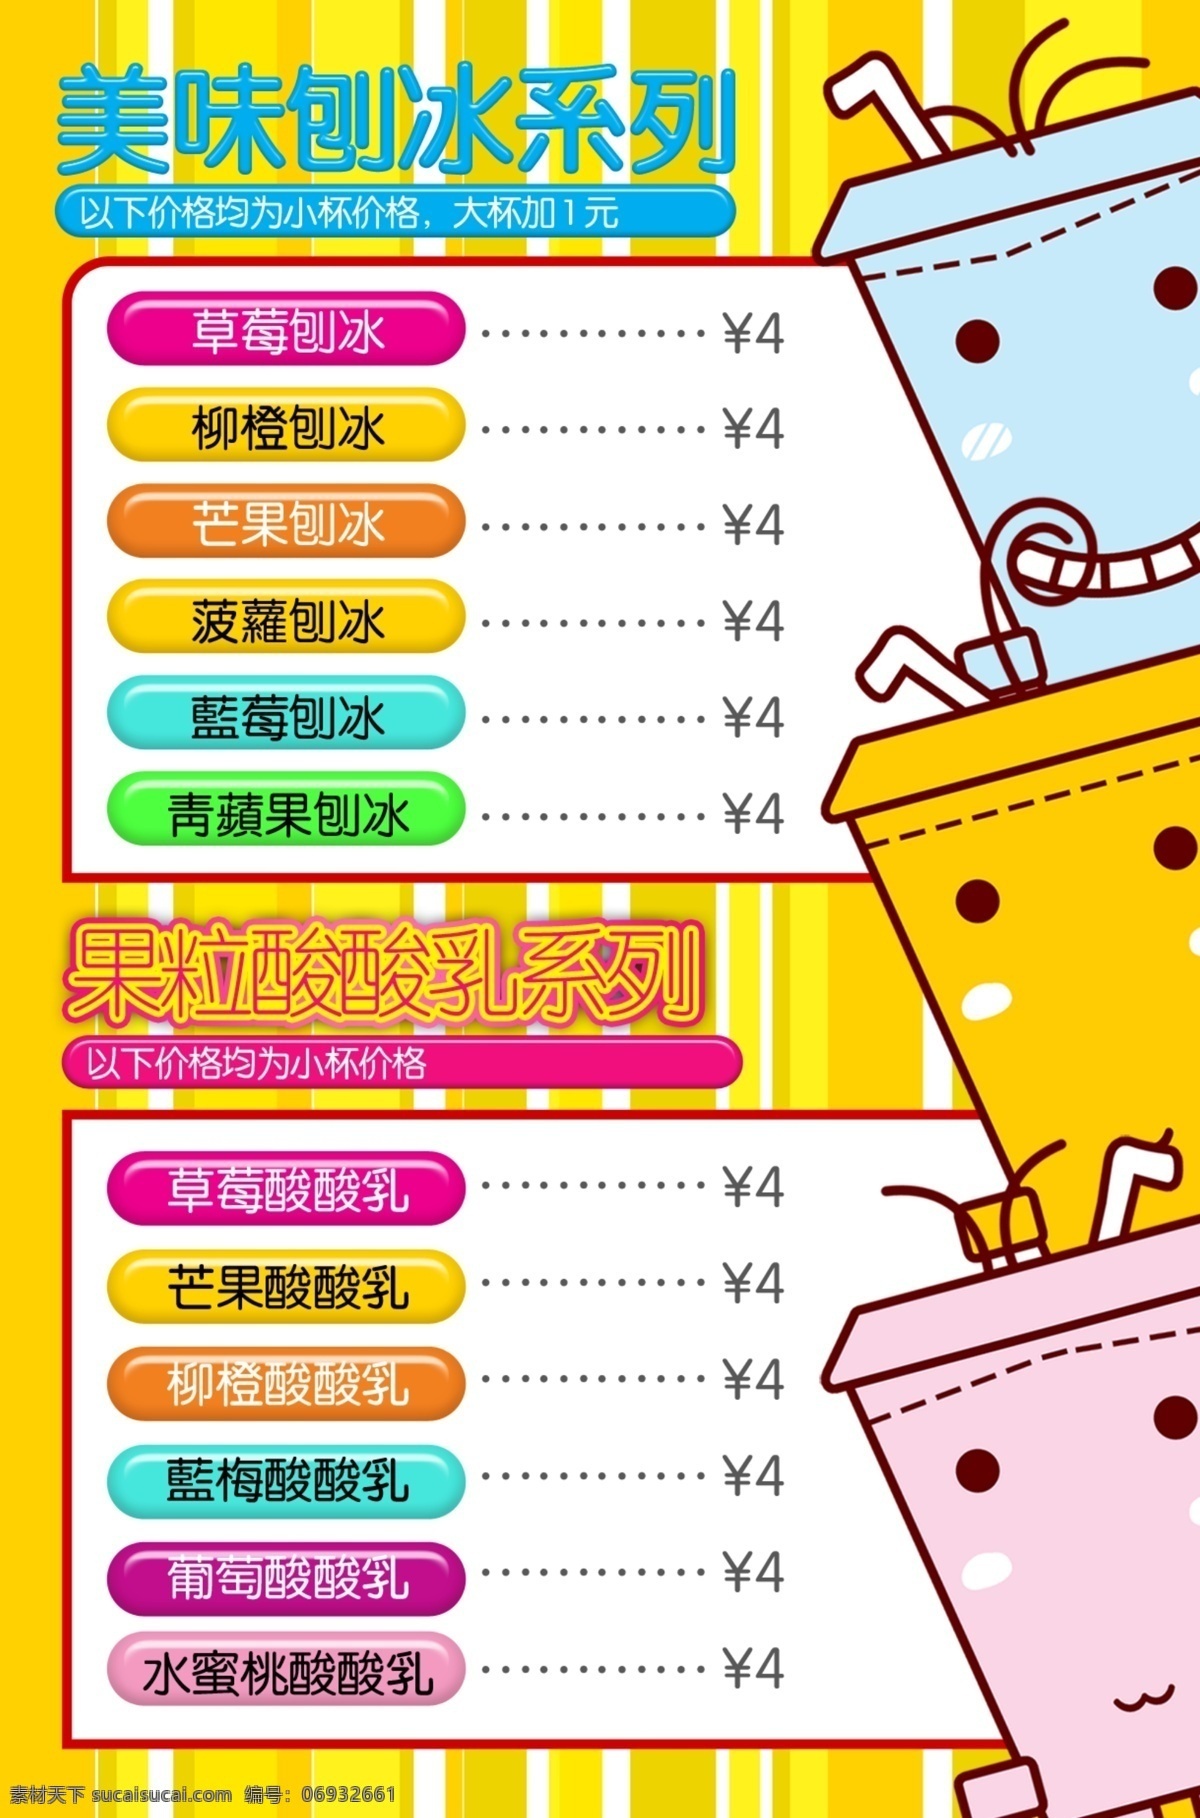 茶 物语 美味 刨冰 宣传画 背景 茶物语 价目表 特色 psd源文件